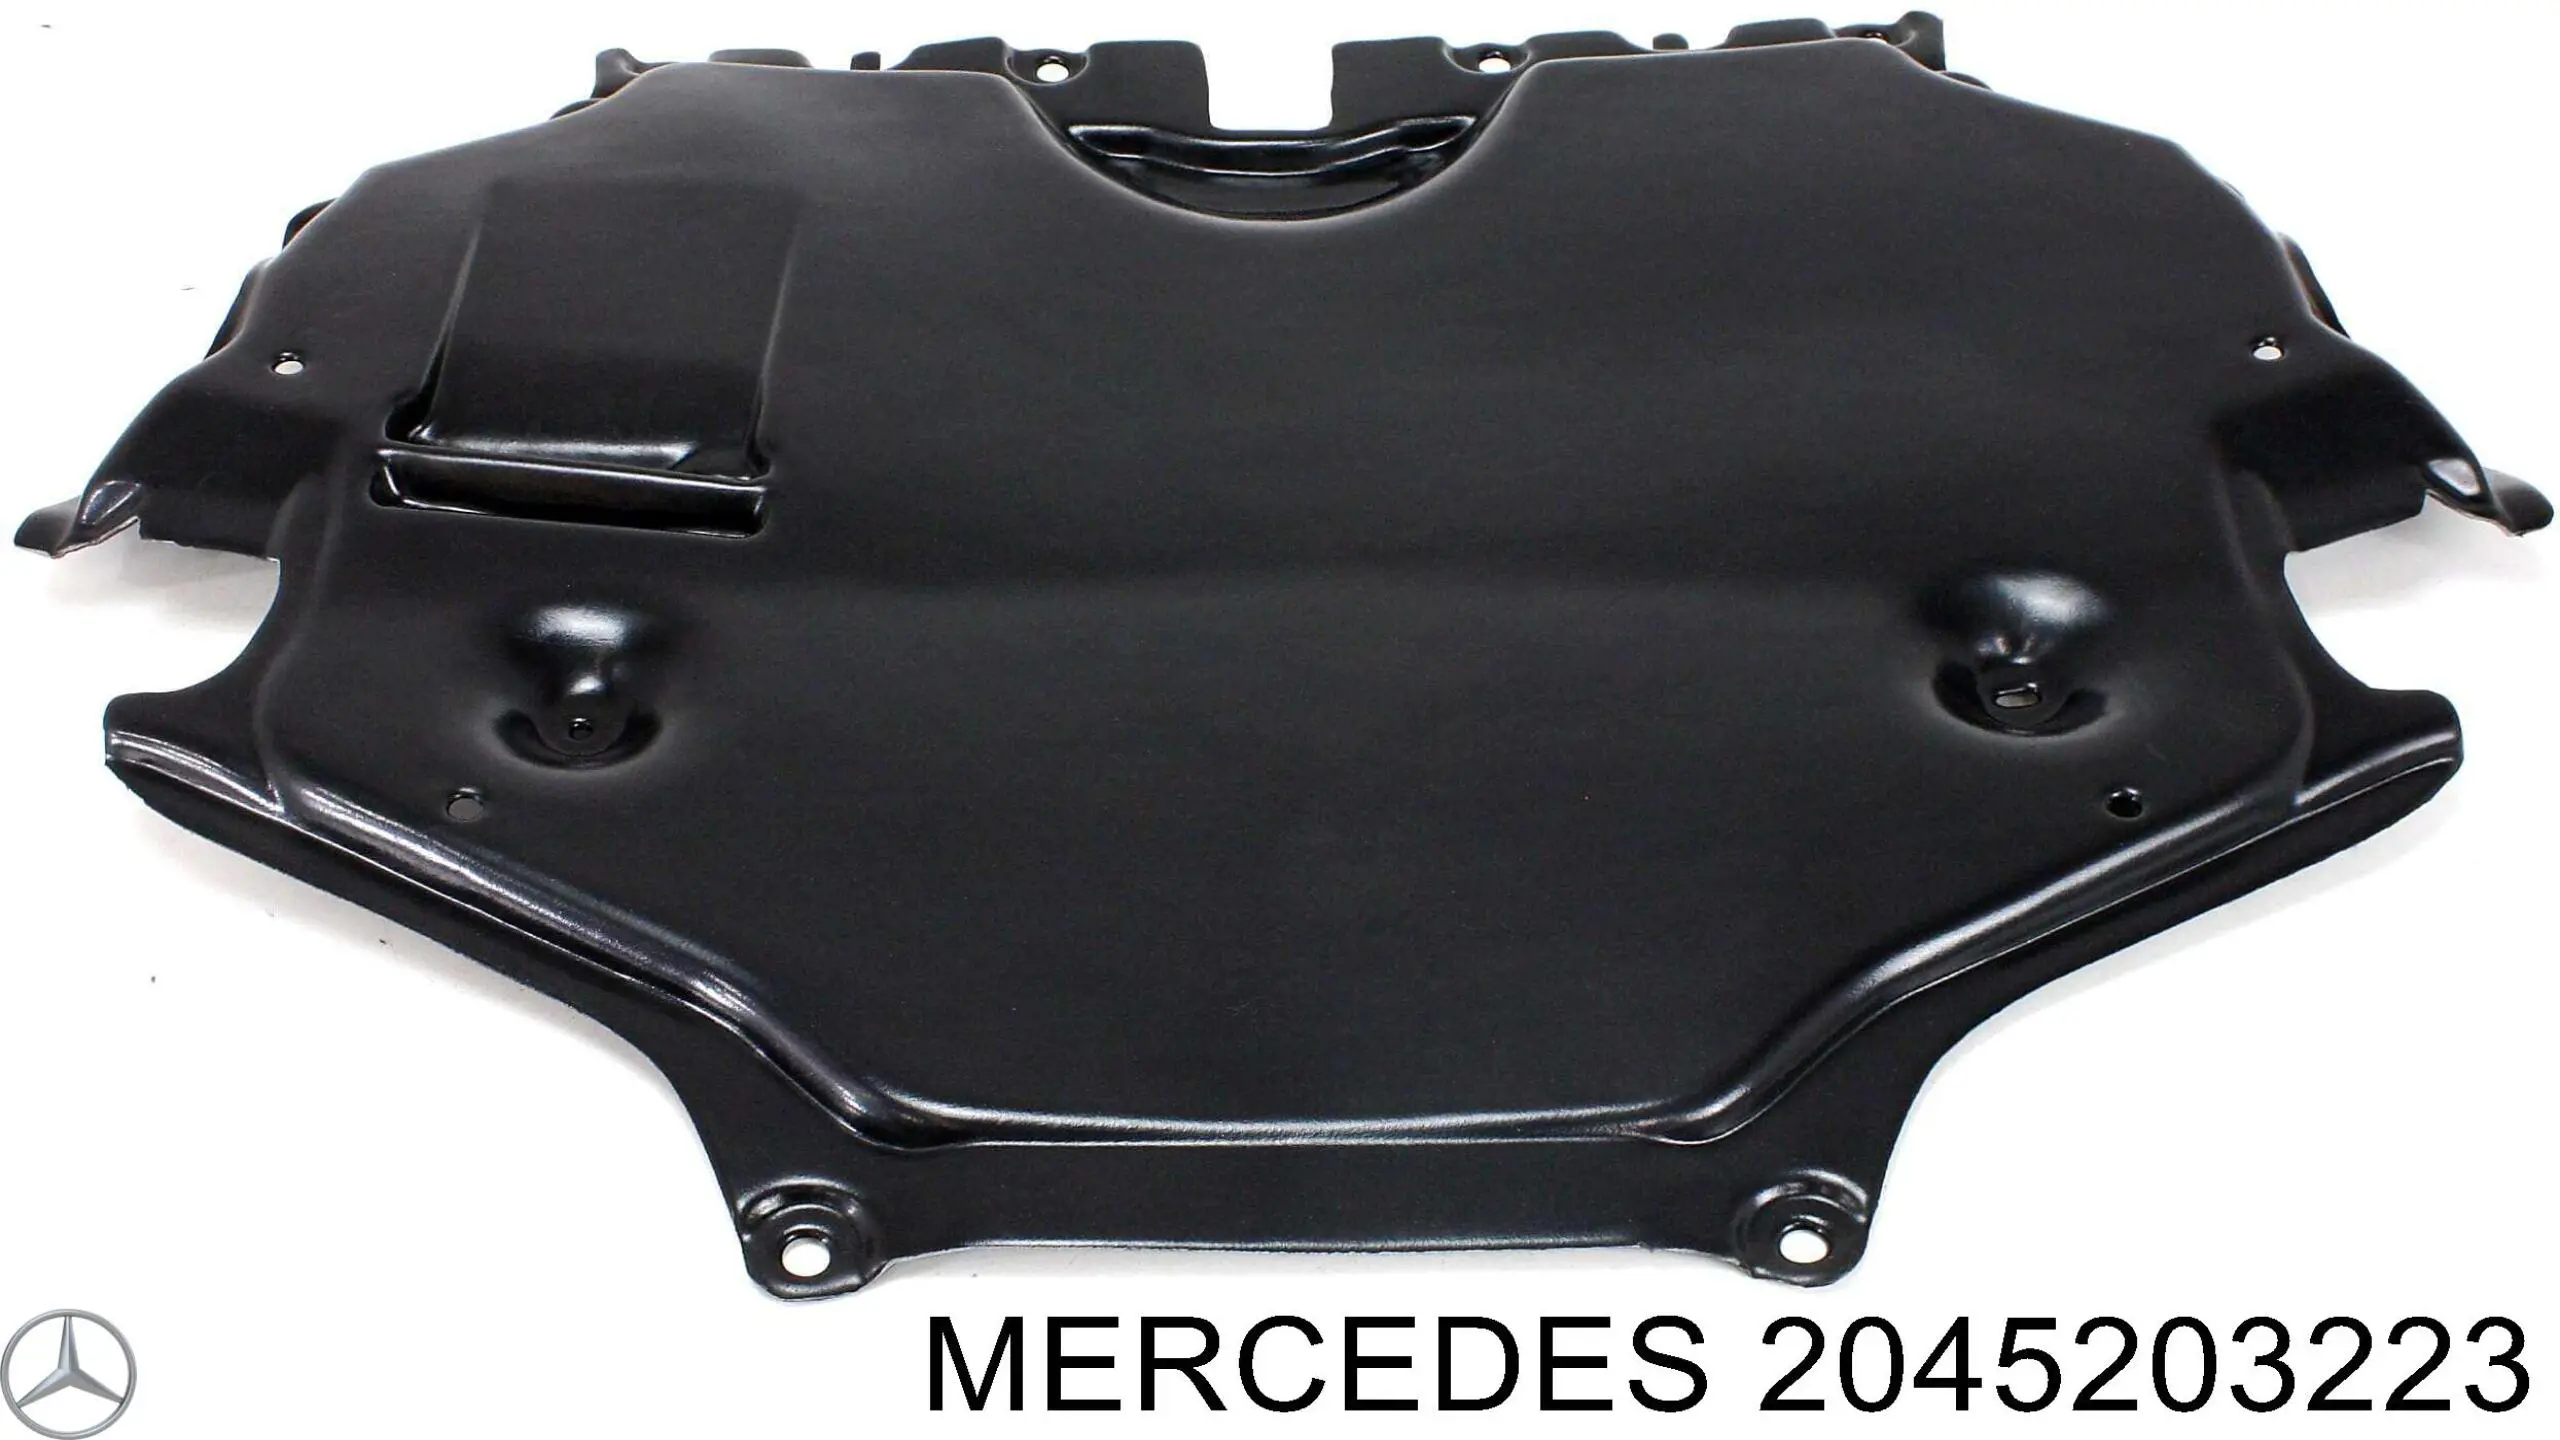 2045203223 Mercedes proteção de motor, de panela (da seção de motor)